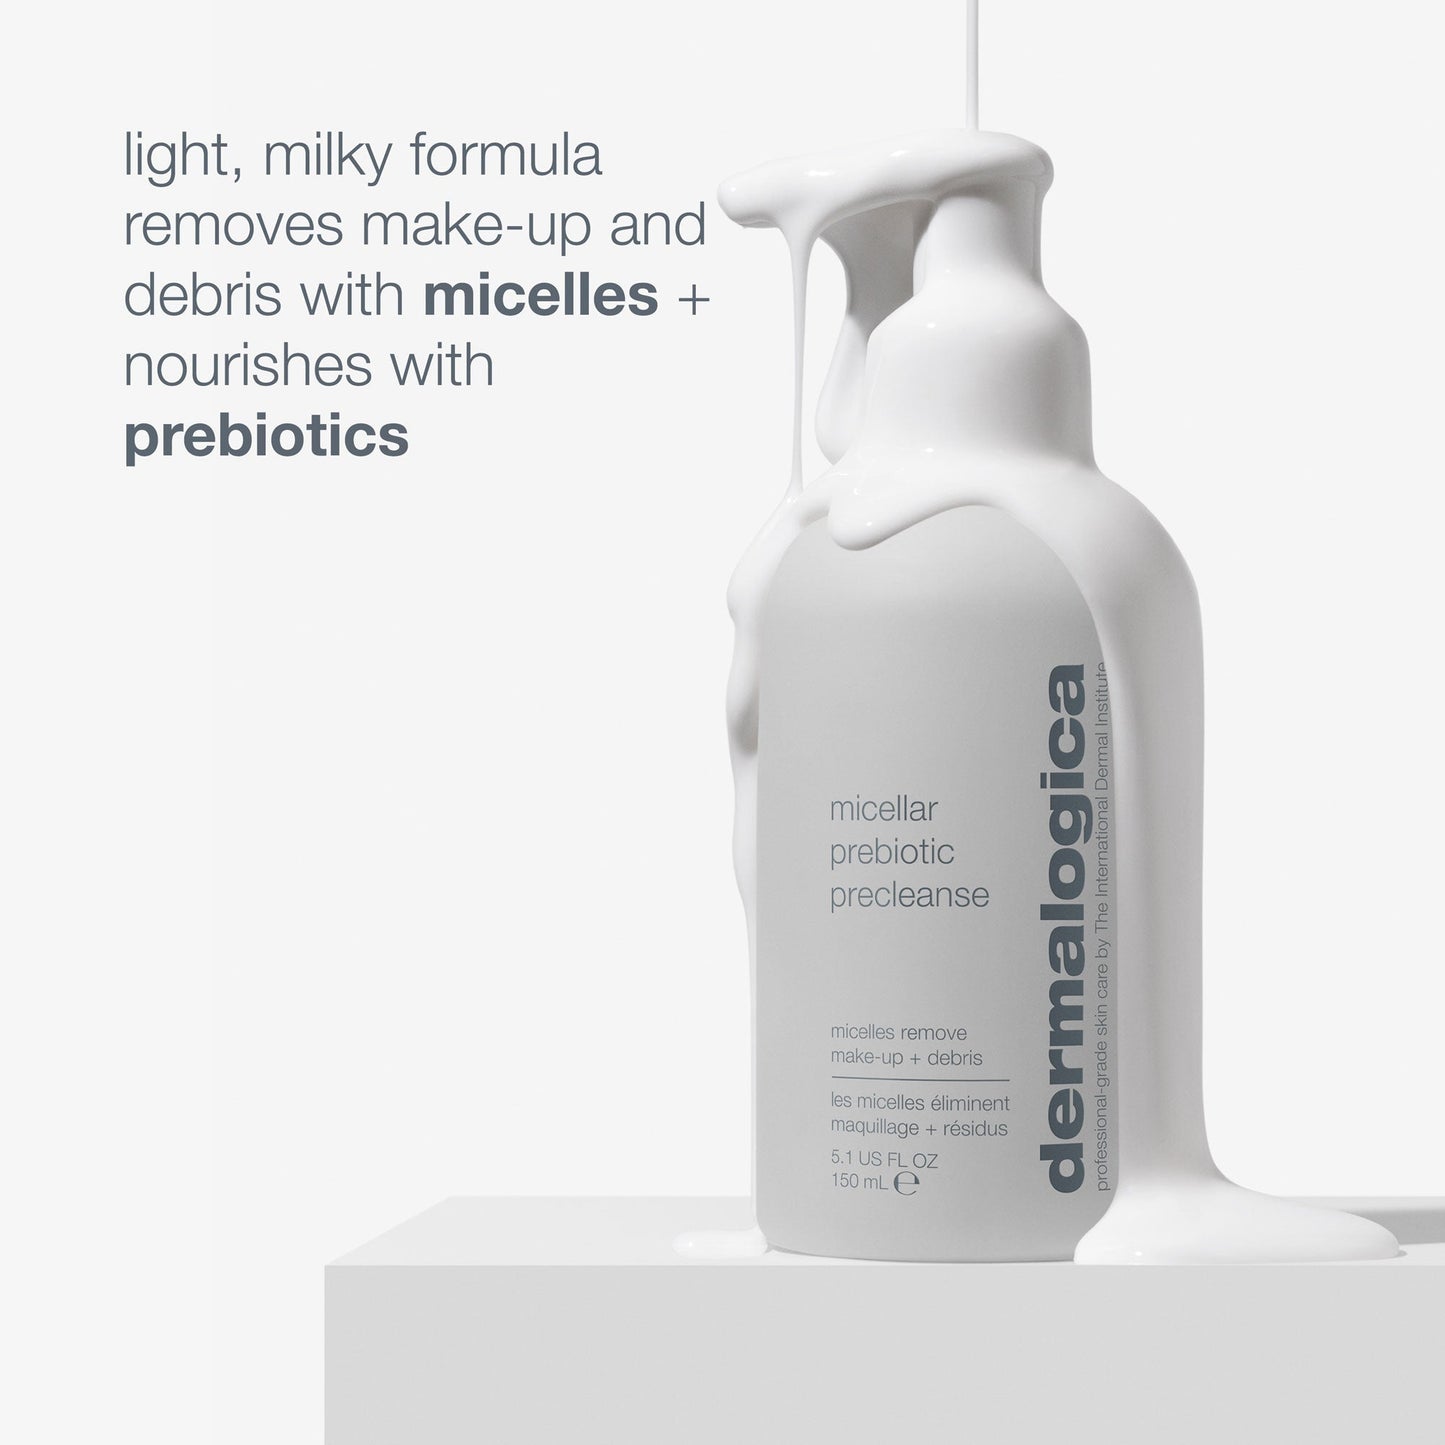 gift - Micellar Prebiotic Precleanse